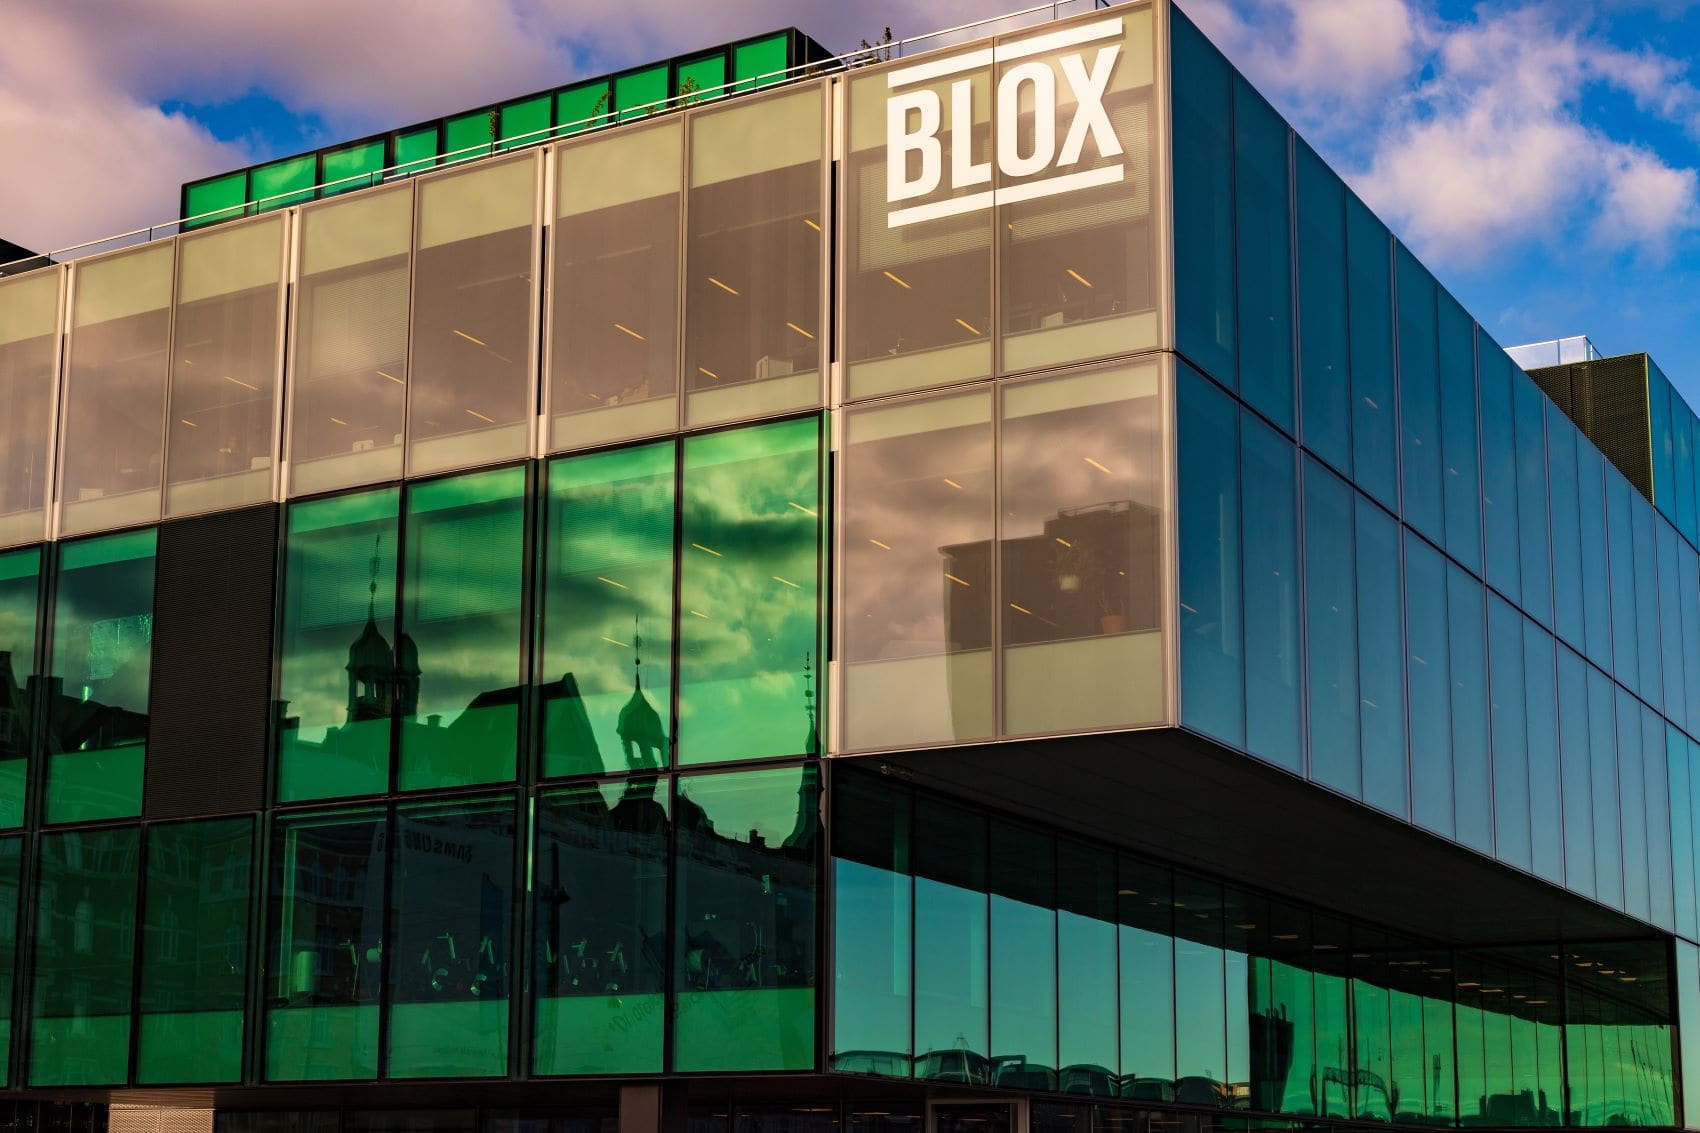 Fassade des Kulturzentrums Blox, Kopenhagen 